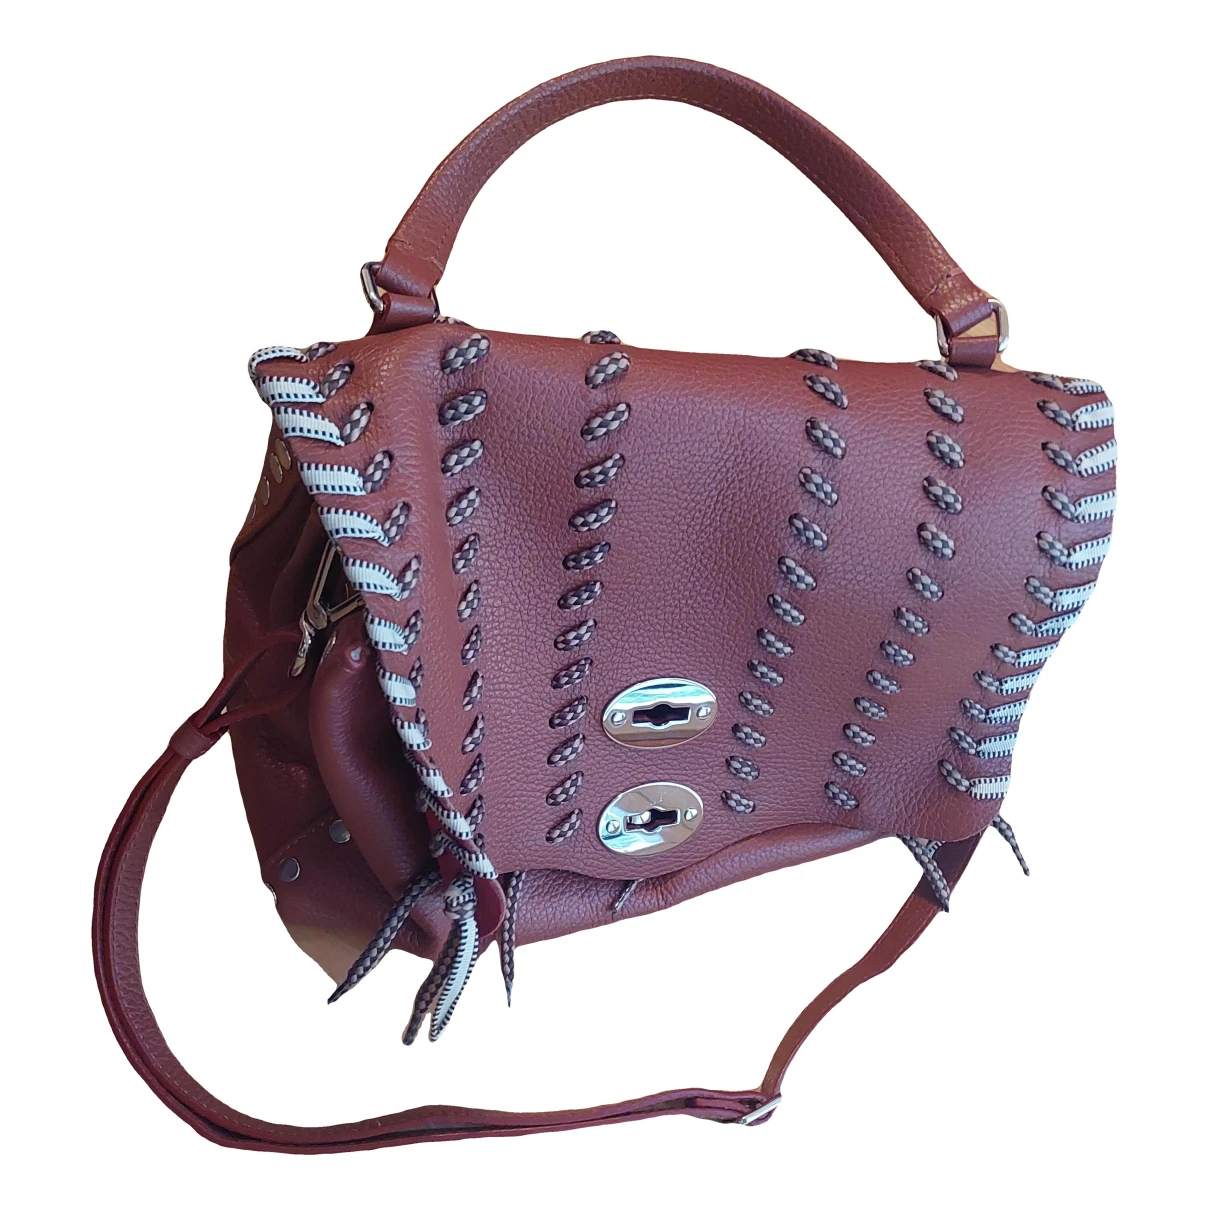 Pre-owned Zanellato Leather Handbag In Brown